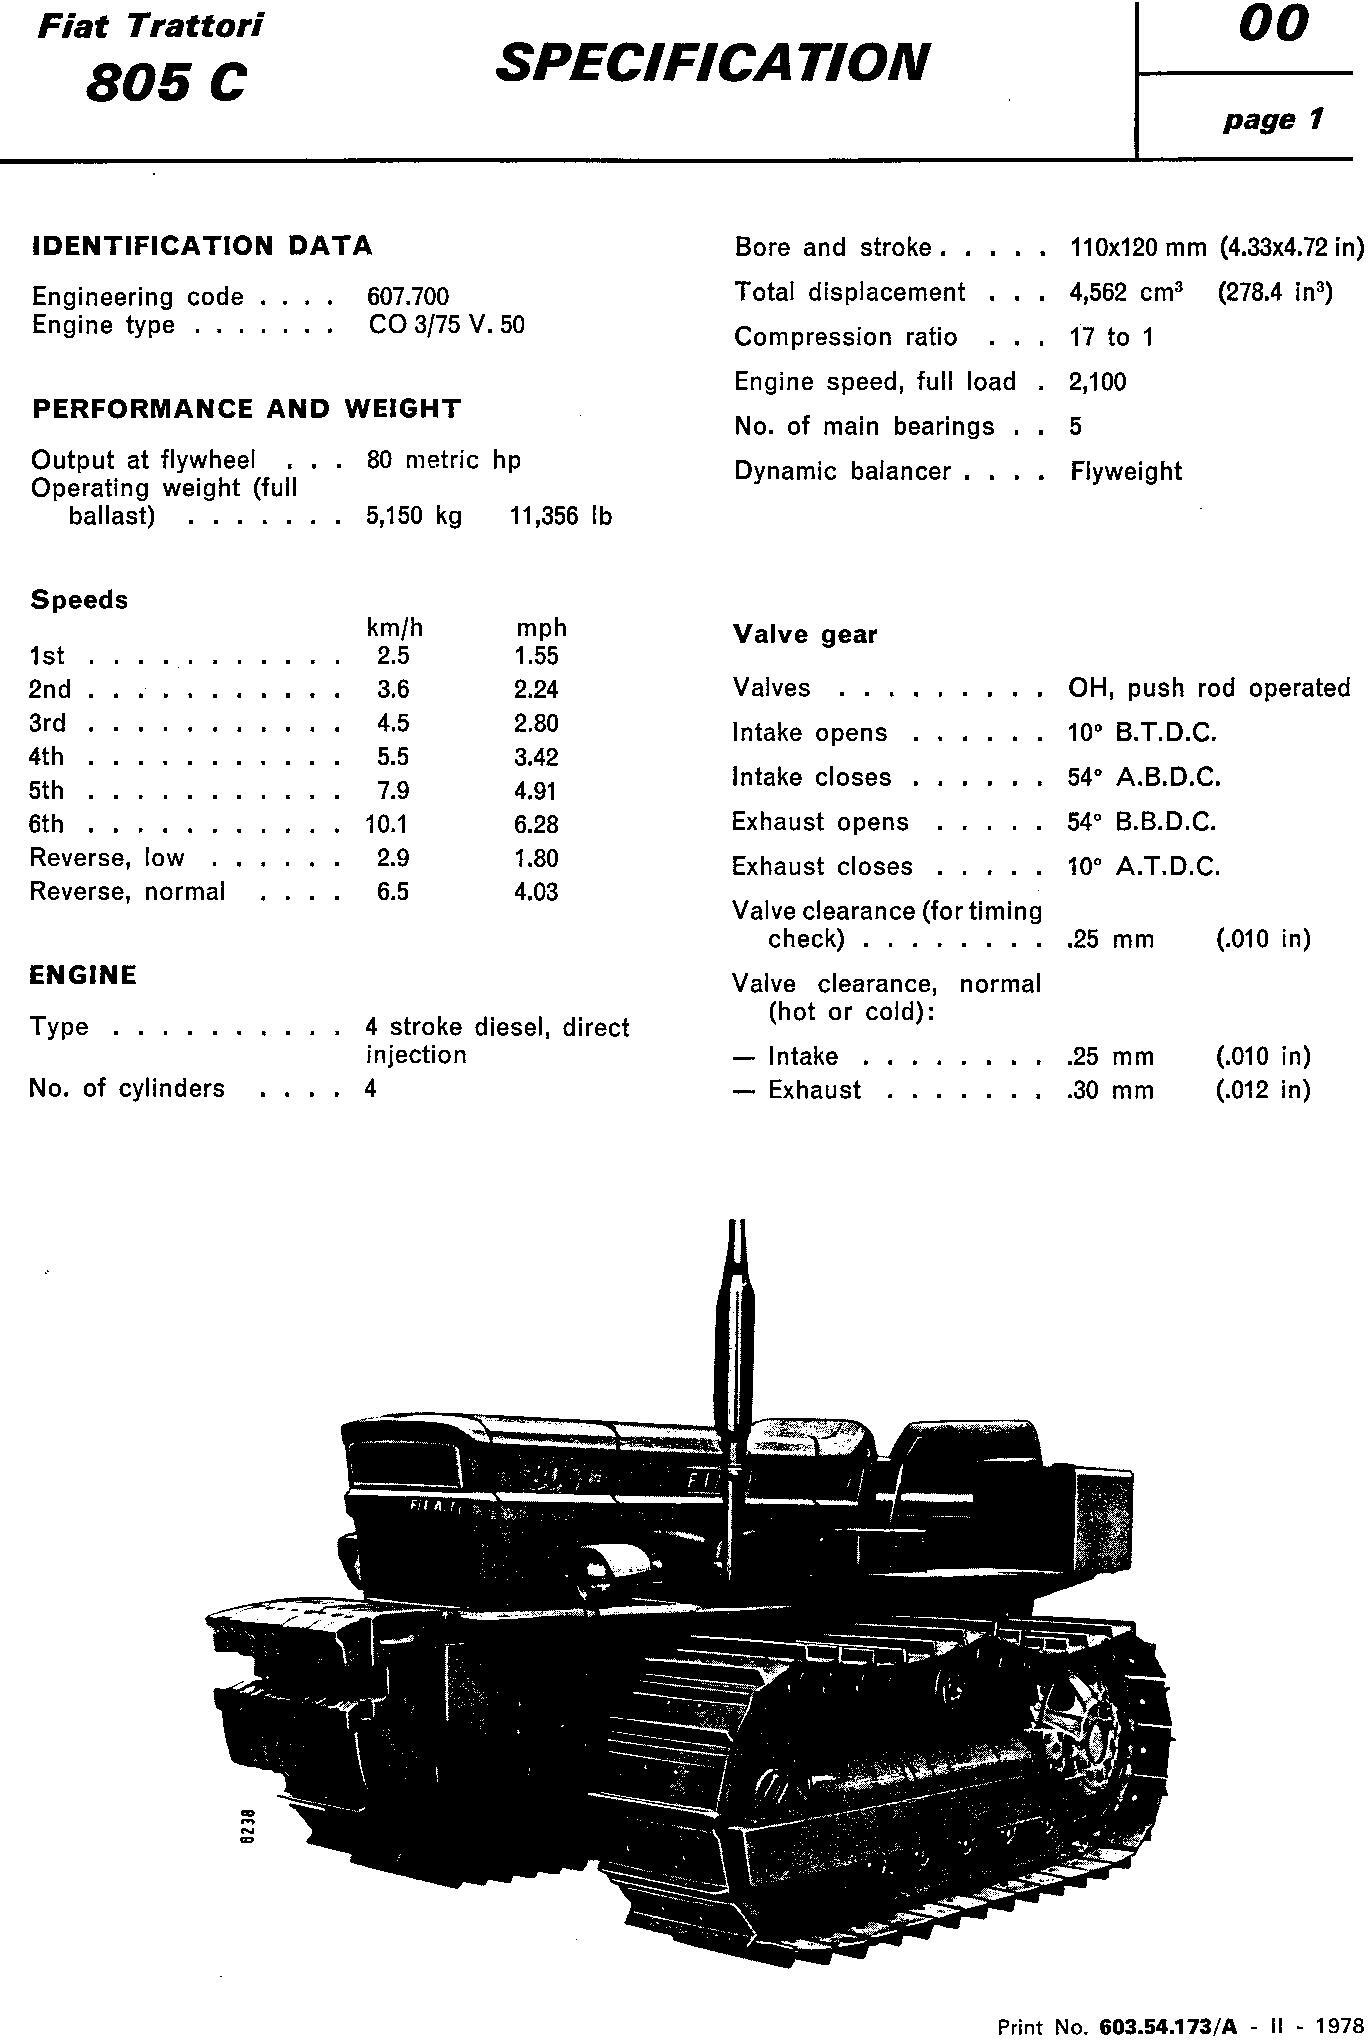 Fiat 805C Crawler Tractors Workshop Service Manual - 1